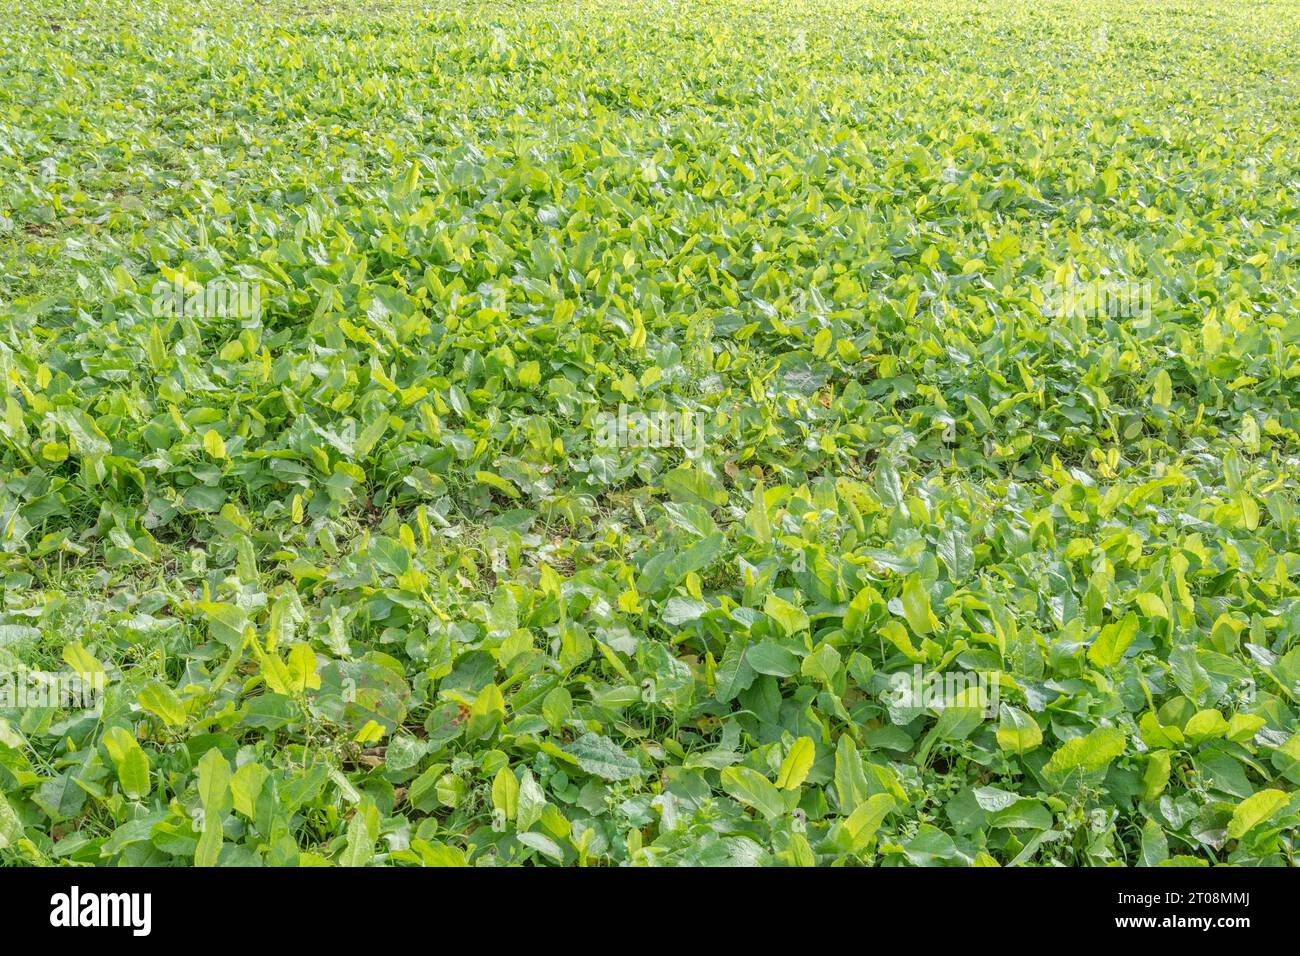 Campo autunnale dopo il raccolto dopo il raccolto estivo. Terreno assolutamente inghiottito da erbacce agricole, in particolare bacino a foglie larghe / Rumex obtusifolius. Foto Stock